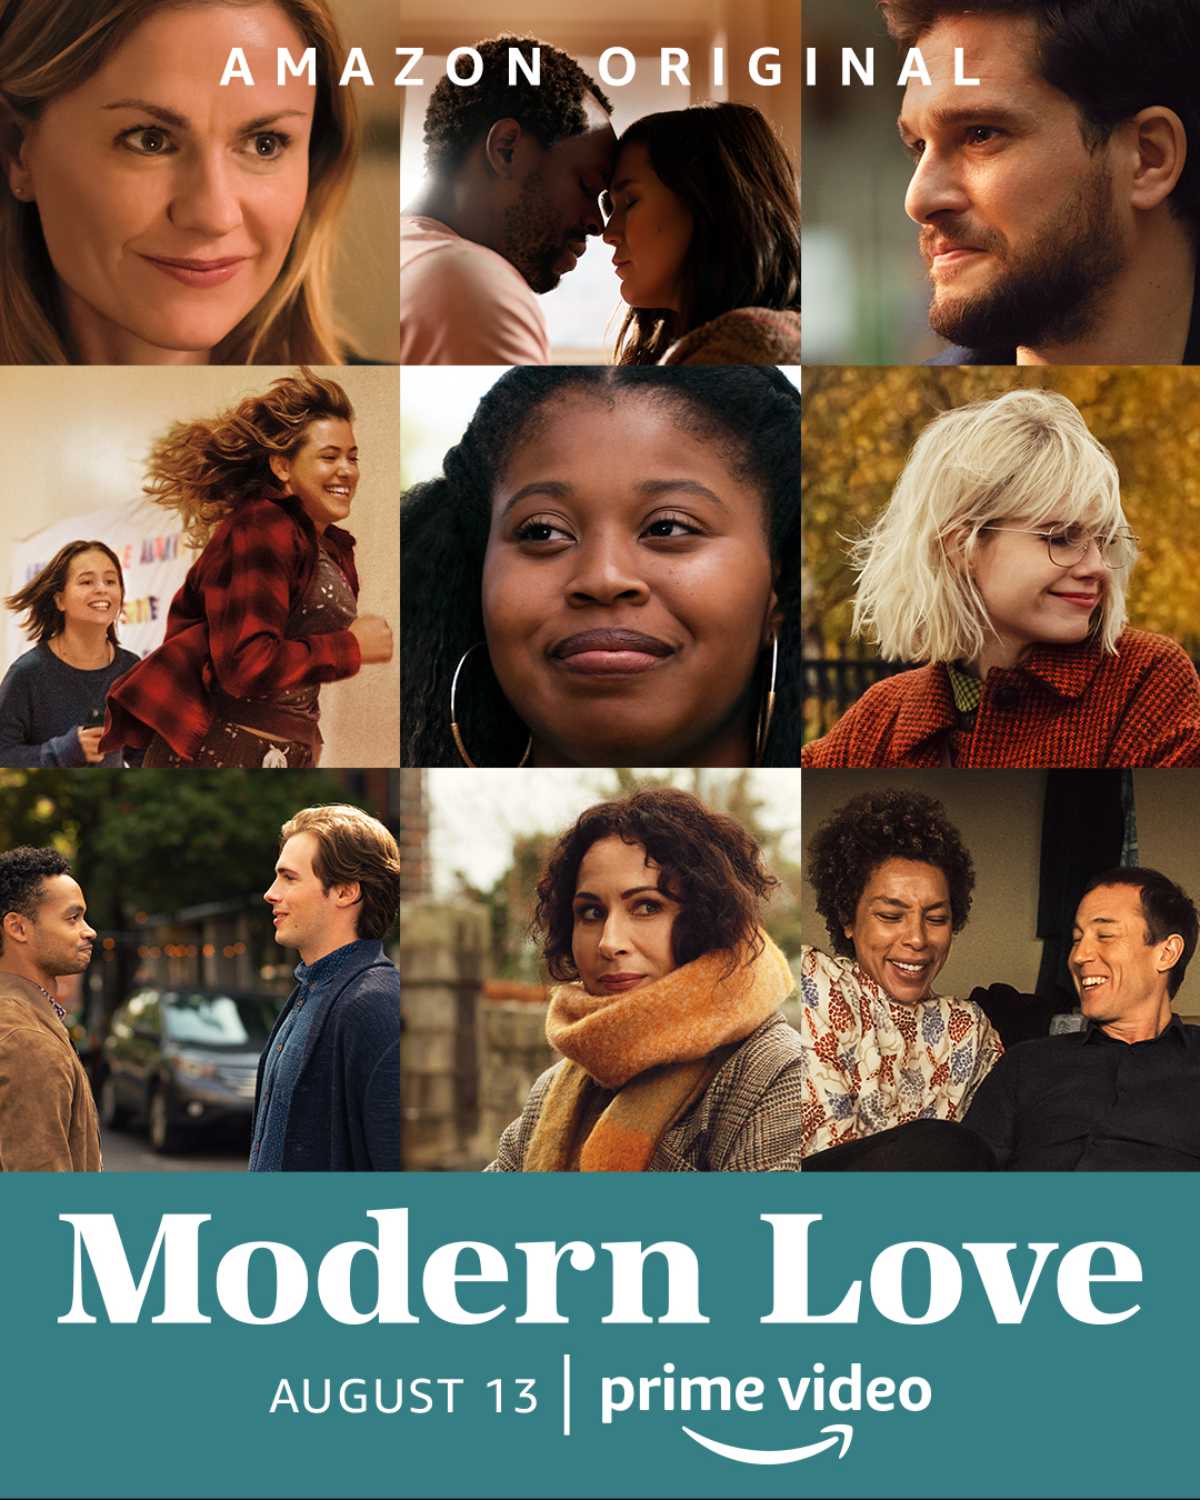 Modern Love season 2 starring Kit Harington - spoiler-free review